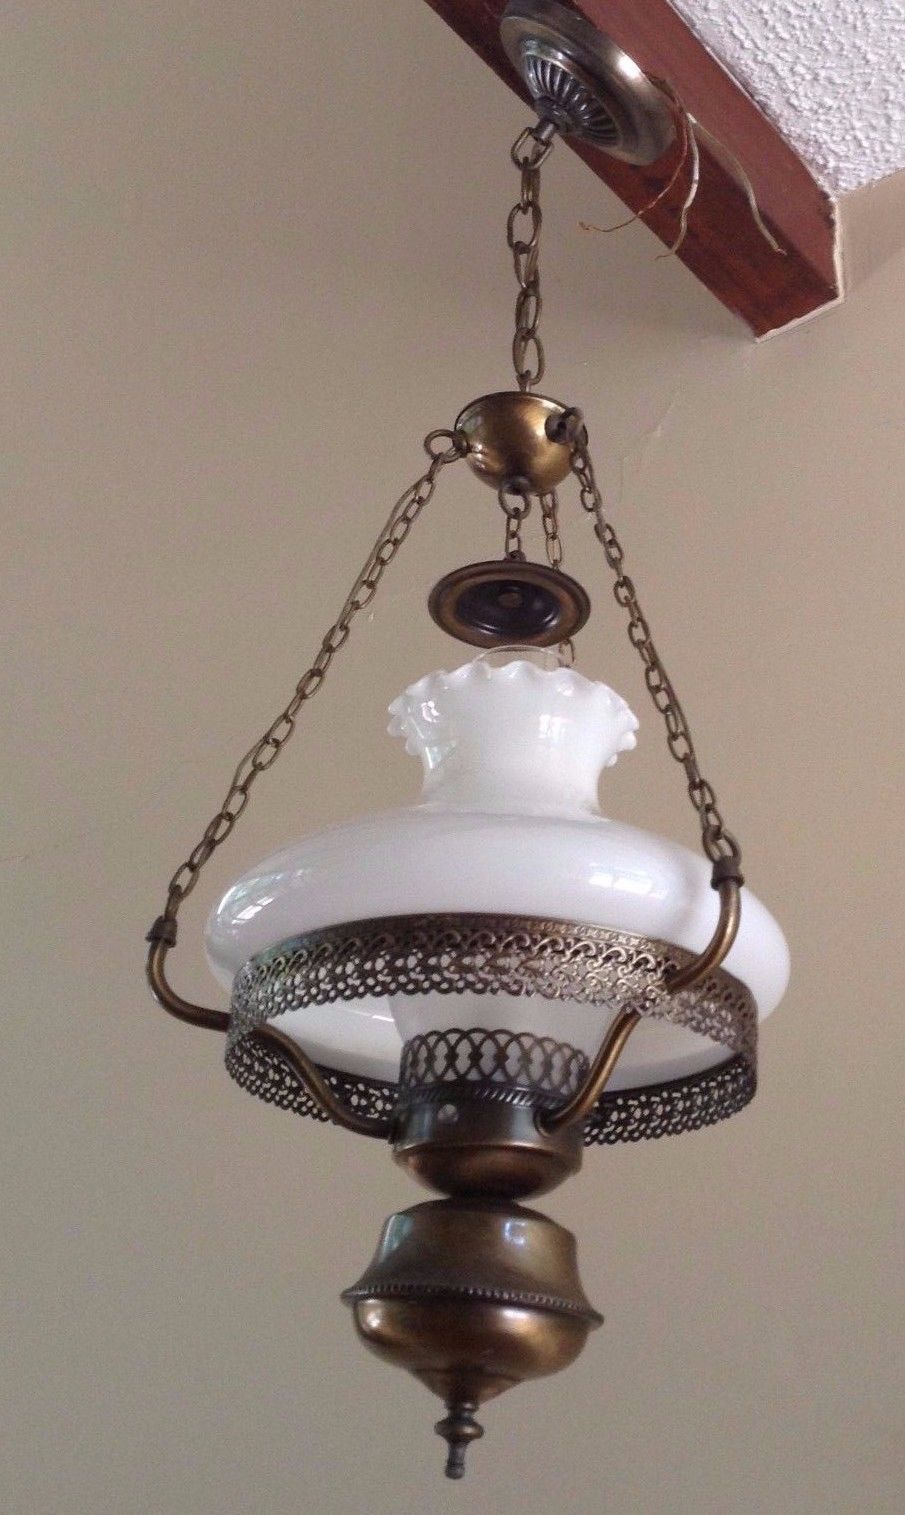 VTG Hanging Hurricane Lamp Ceiling Light Fixture Tam O Shanter Milk Glass Globe